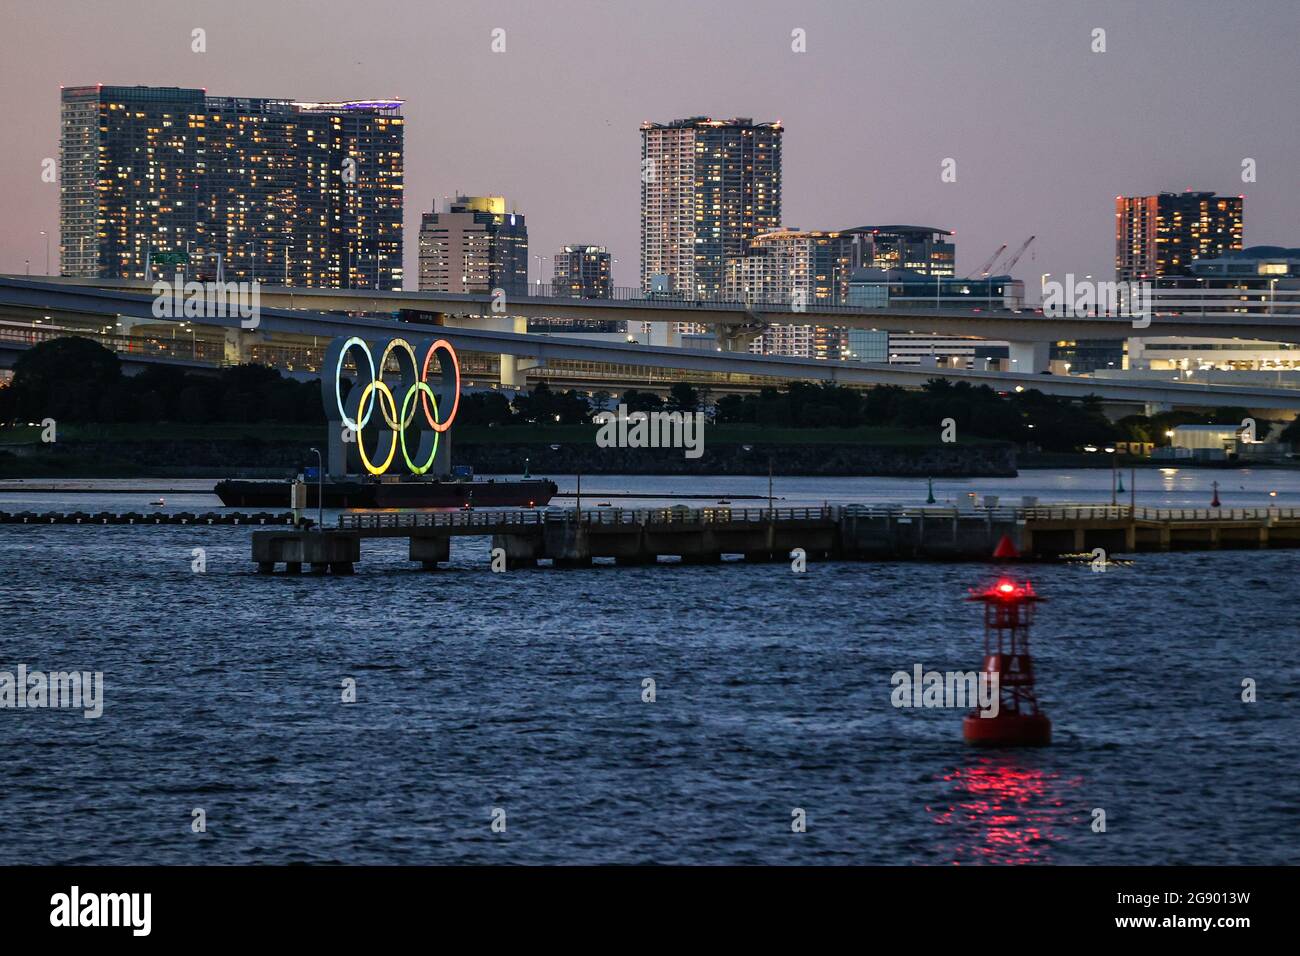 16th de julio de 2021 - UN gran monumento de los anillos olímpicos se exhibe antes de los Juegos Olímpicos de Tokio 2020 en Tokio, Japón Foto de stock